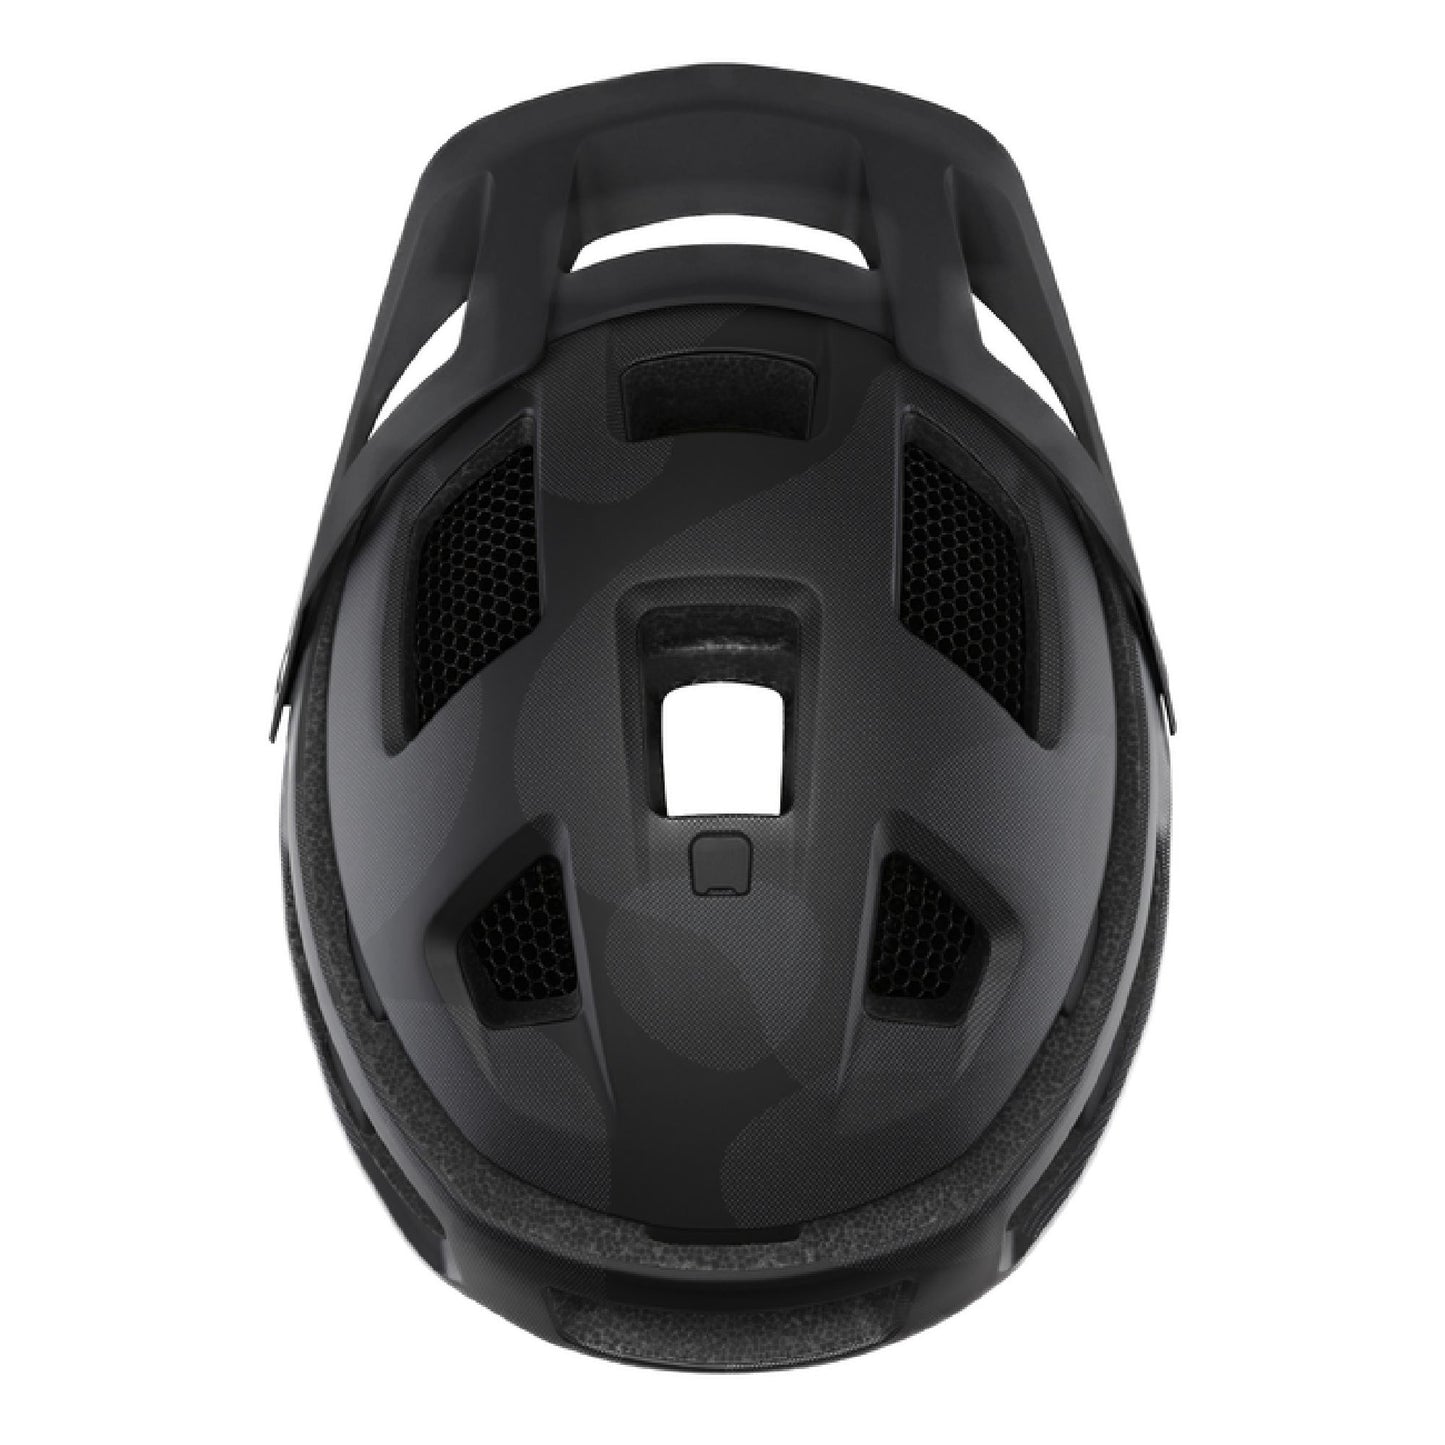 Smith Forefront 2 MIPS Helmet Matte Cloudgrey Bike Helmets